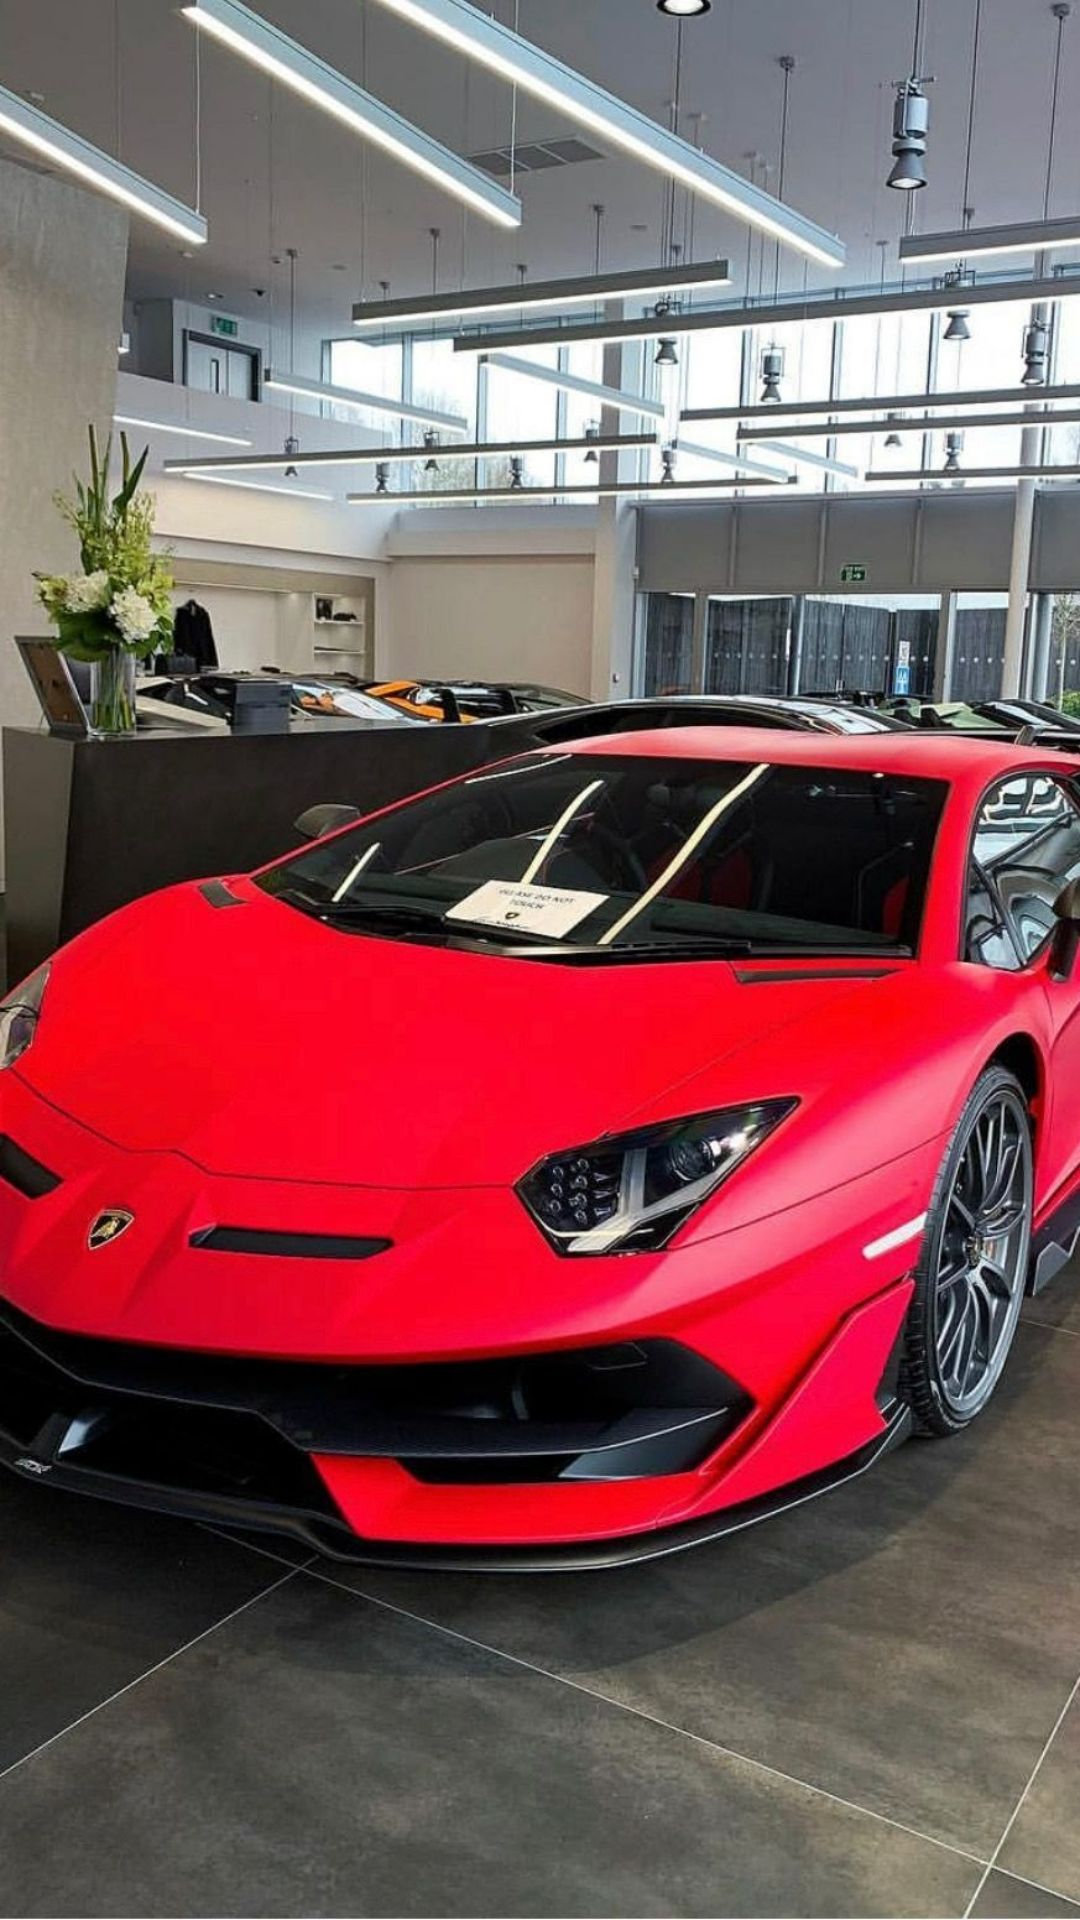 Red Lamborghini Photos